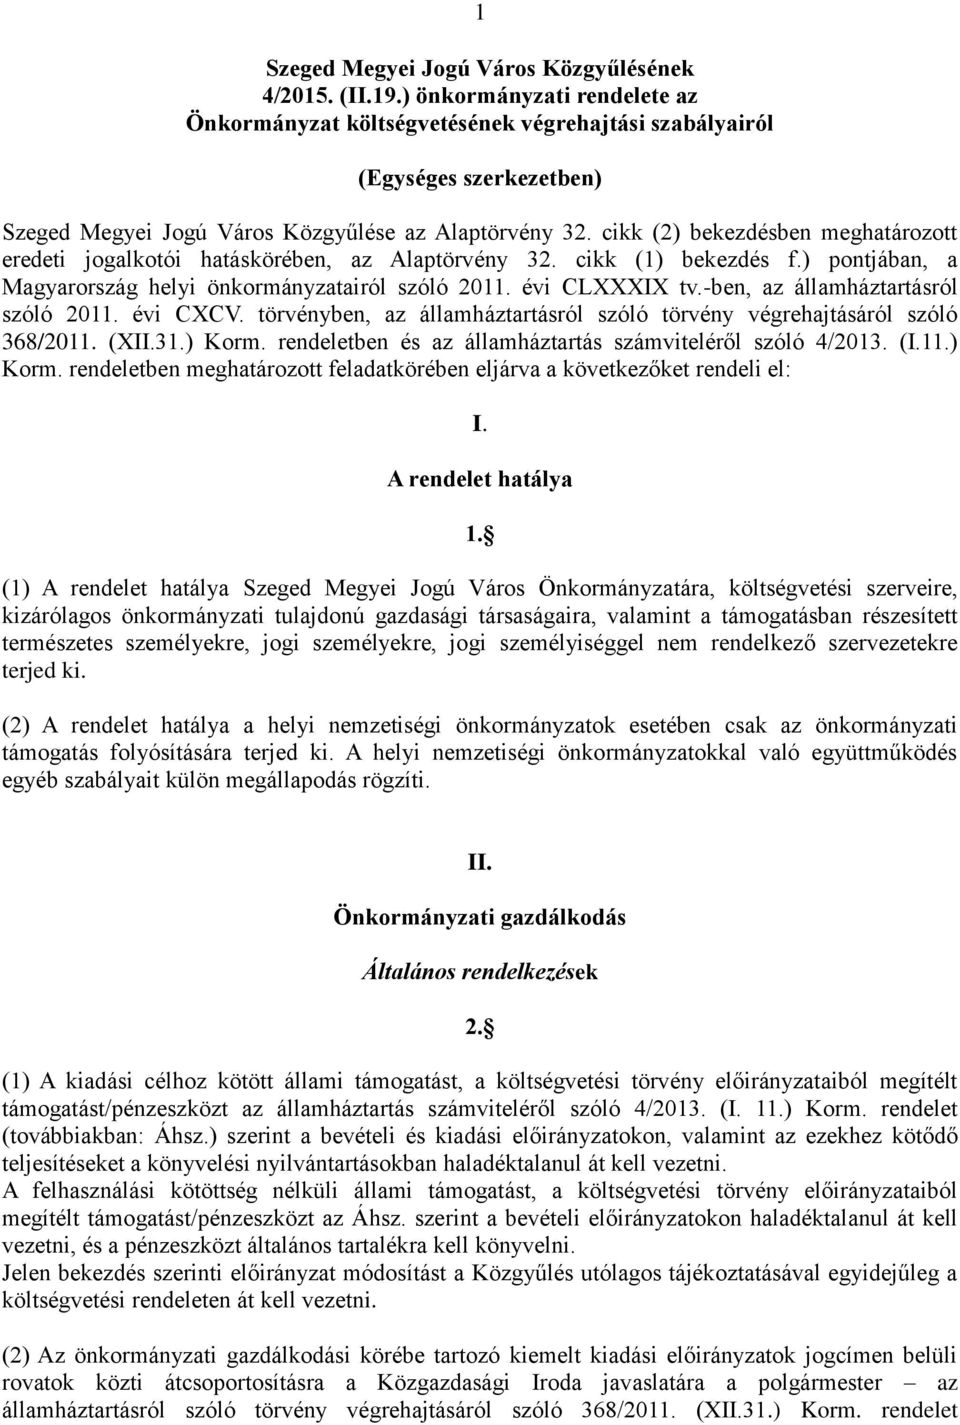 cikk (2) bekezdésben meghatározott eredeti jogalkotói hatáskörében, az Alaptörvény 32. cikk (1) bekezdés f.) pontjában, a Magyarország helyi önkormányzatairól szóló 2011. évi CLXXXIX tv.